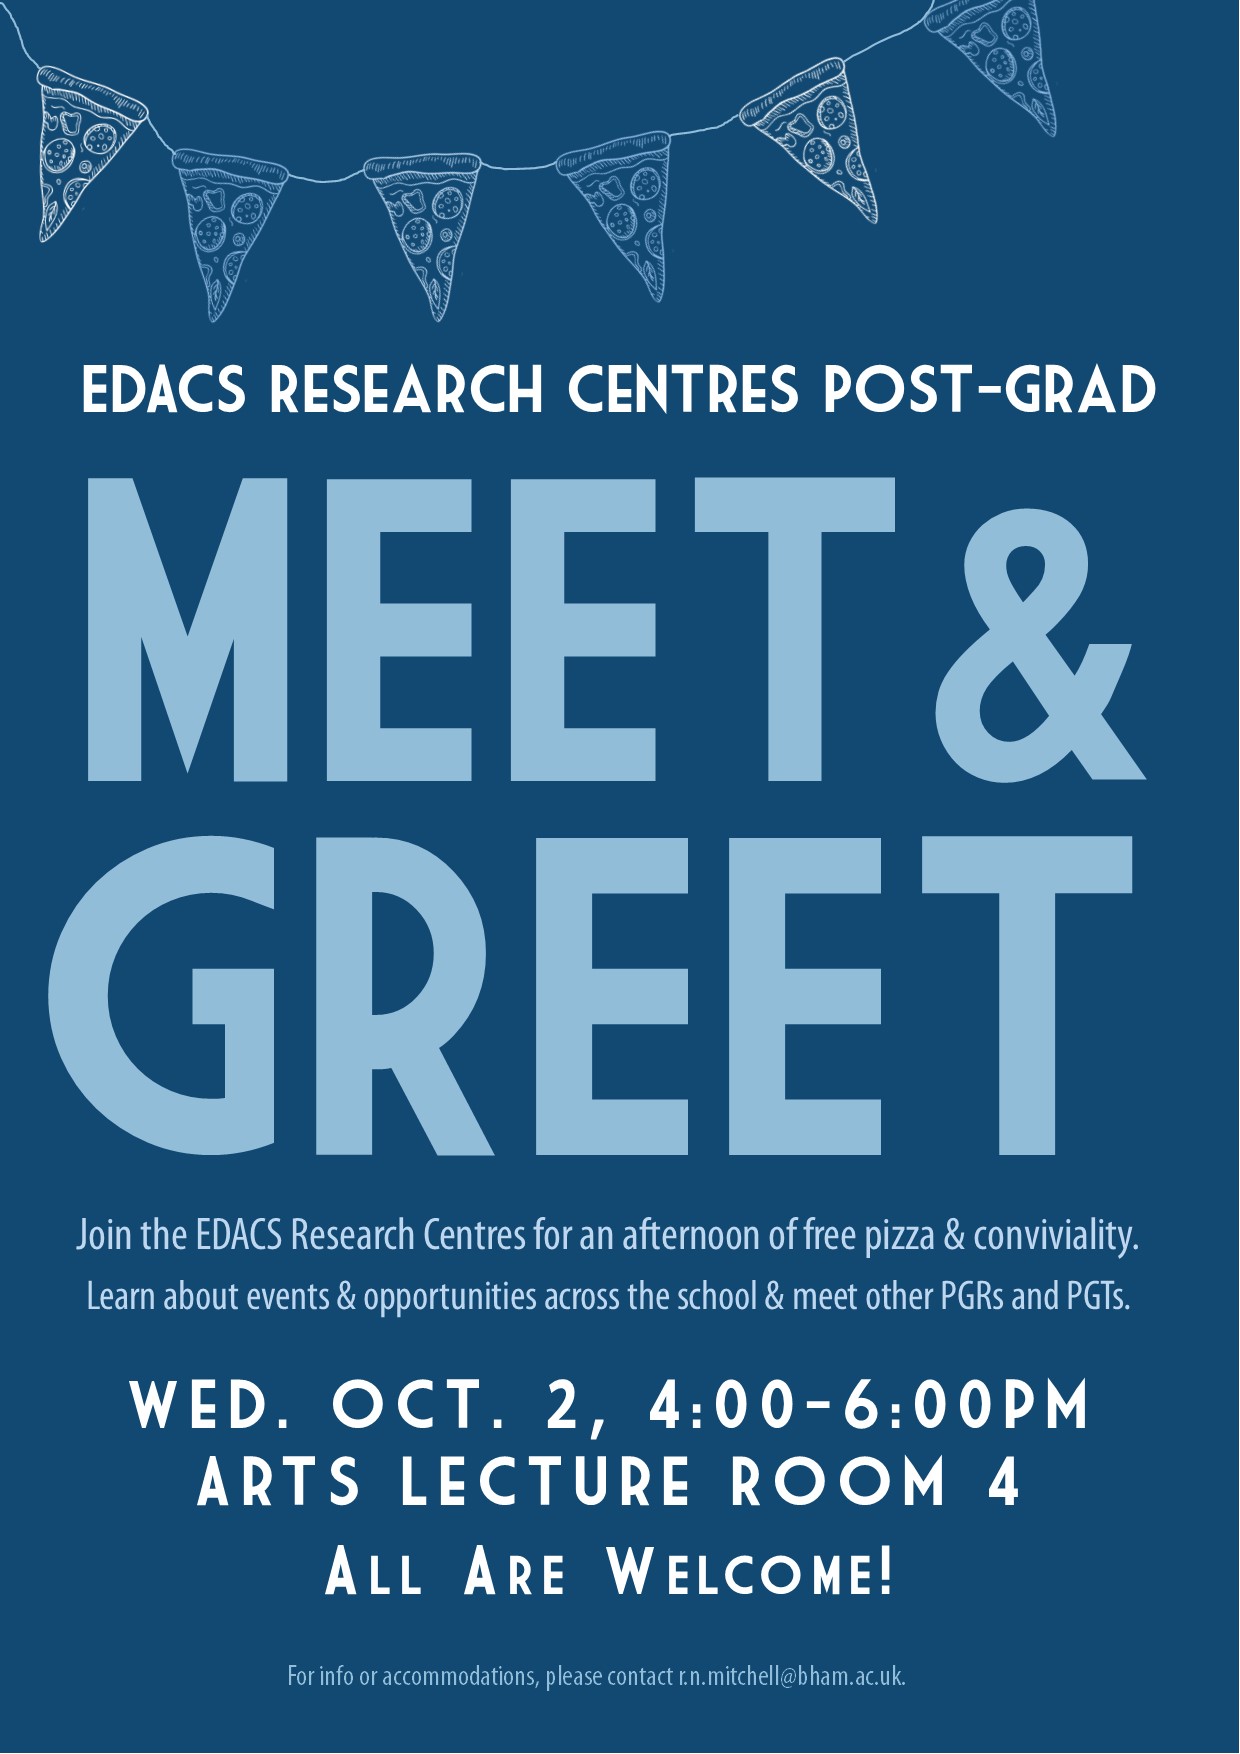 Research Centre Meet & Greet